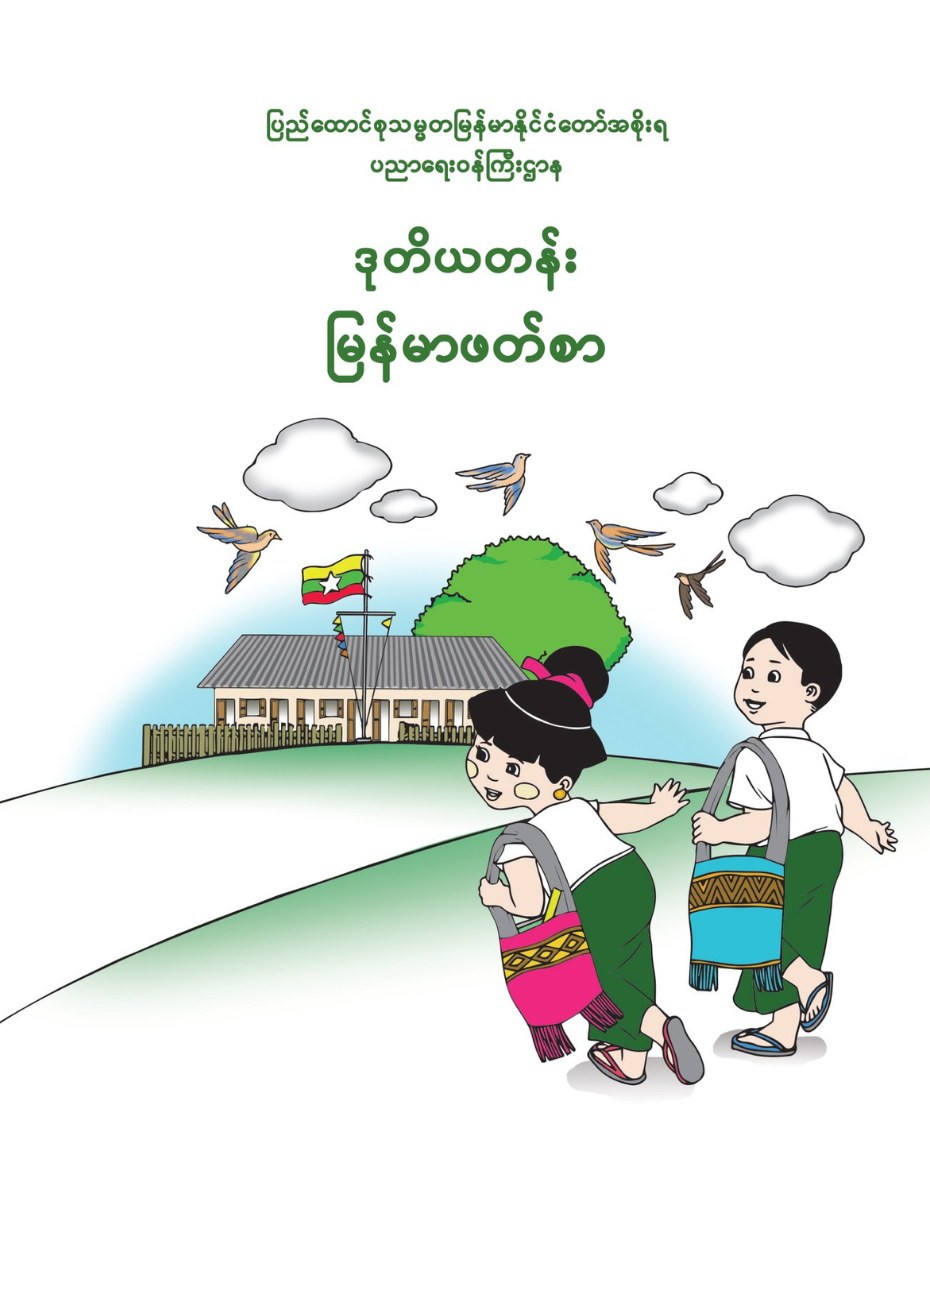 ဒုတိယတန်း မြန်မာဖတ်စာ